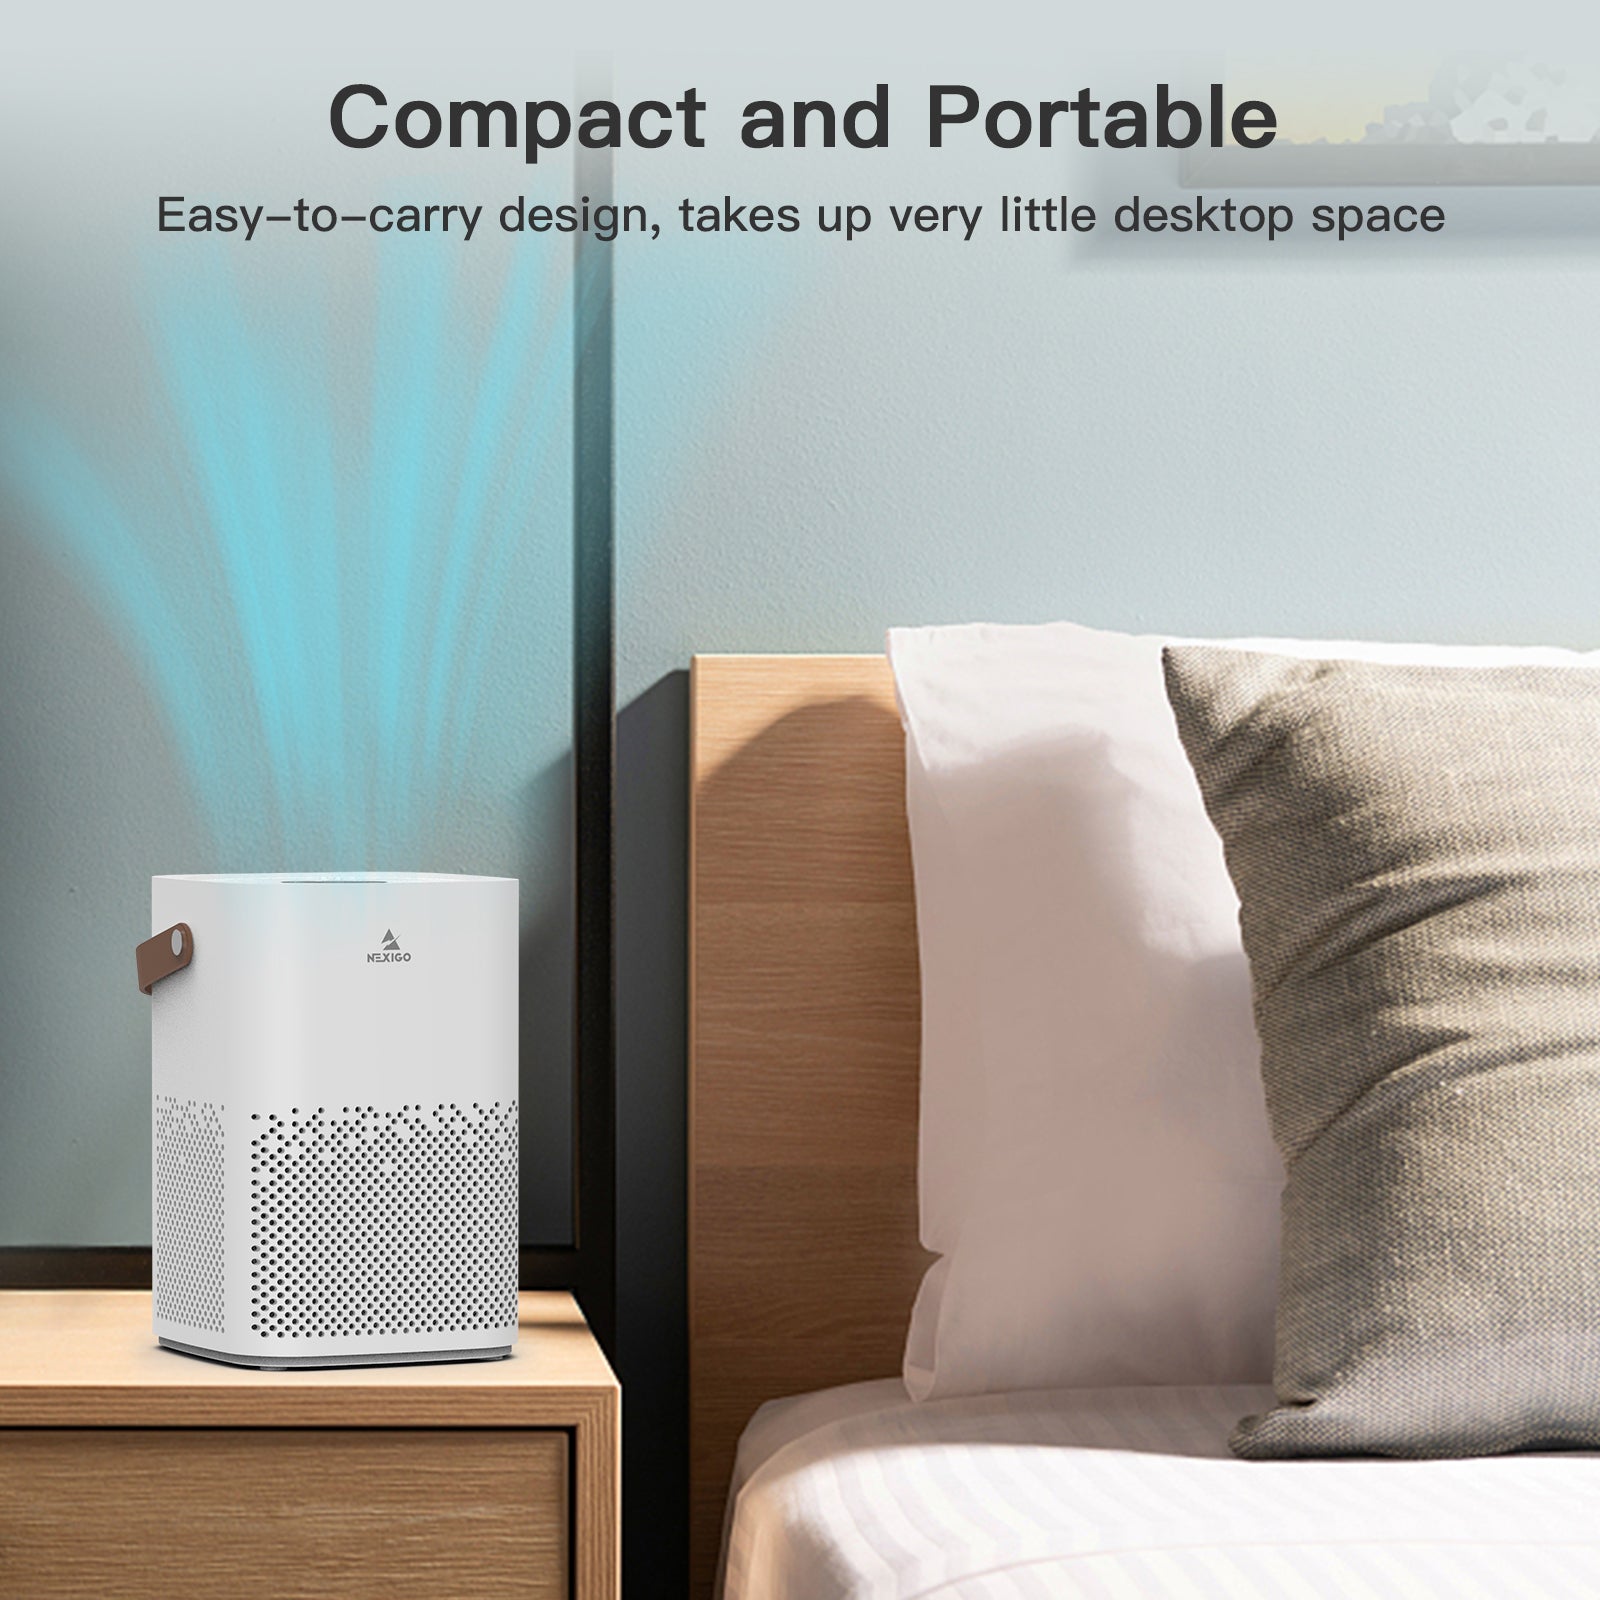 NexiGo mini air purifier is compactable and portable